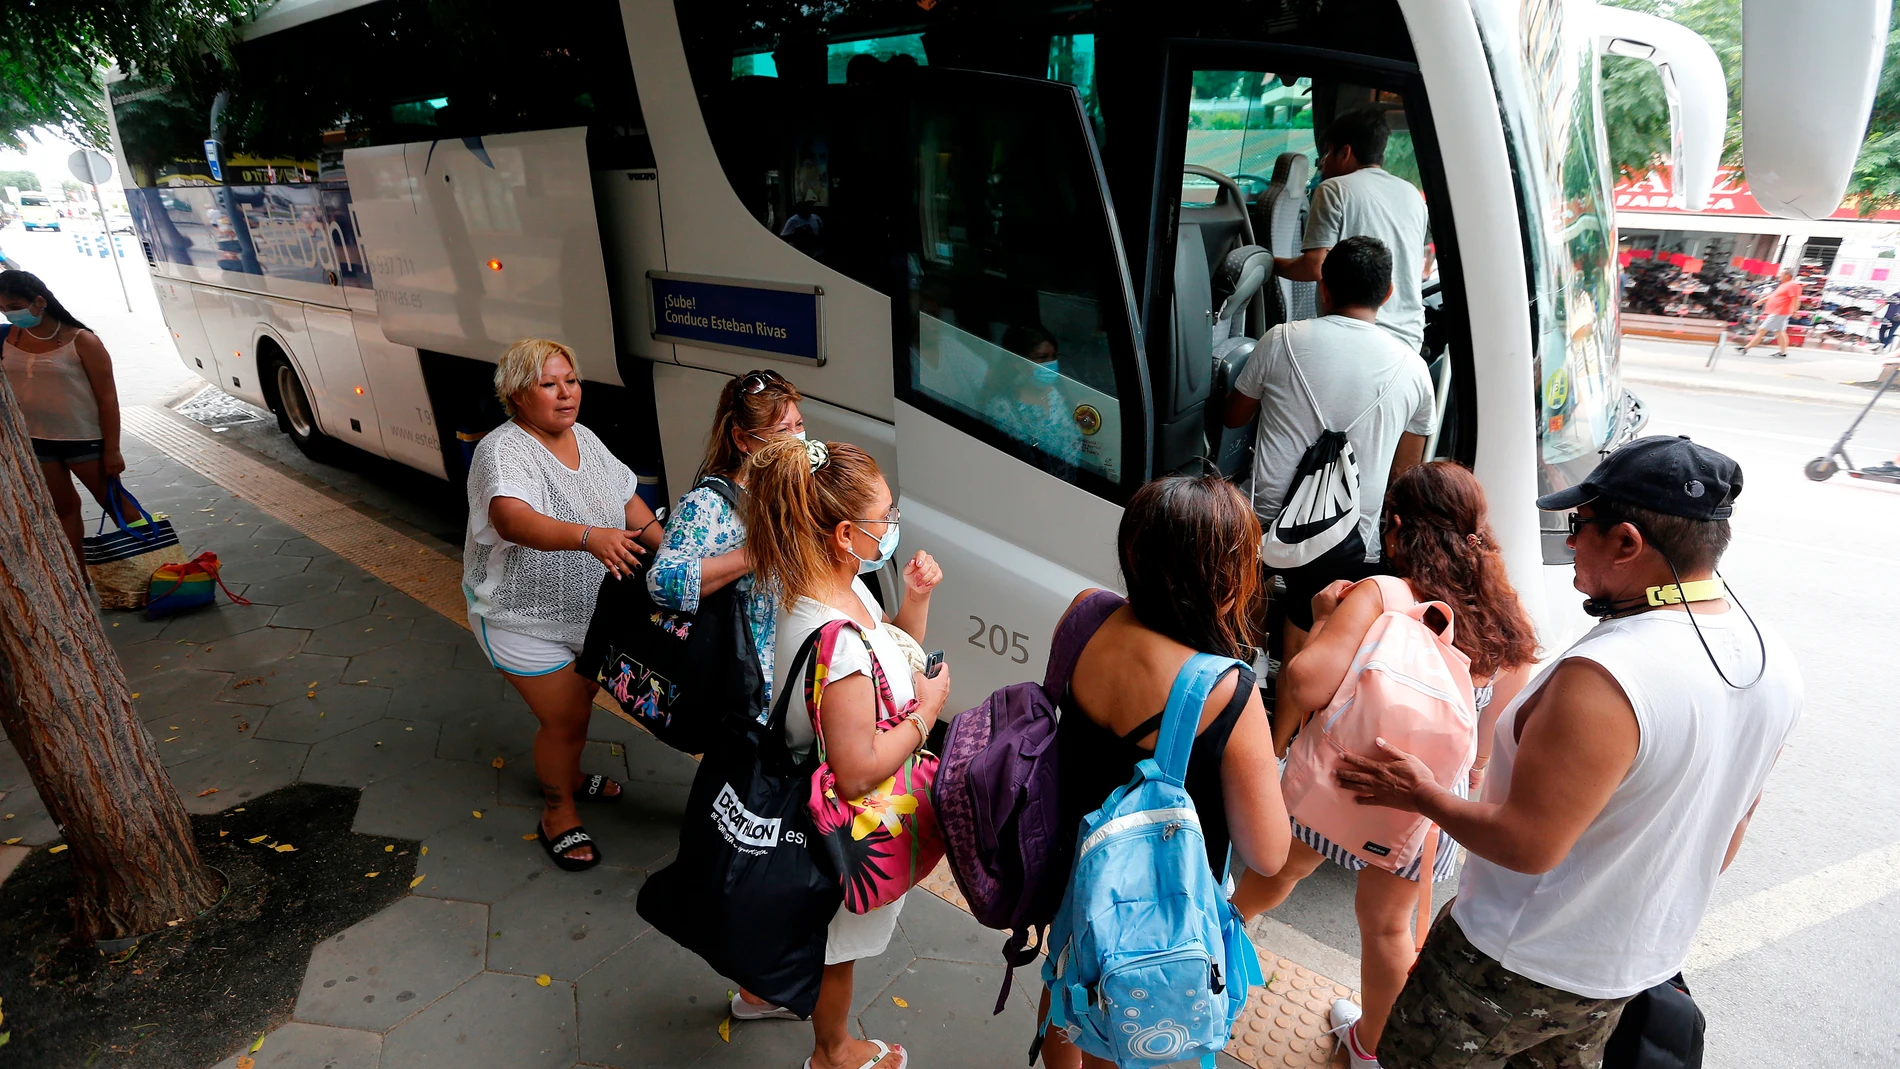 Los viajeros que forman parte de una excursión en autobús que los lleva desde Madrid a Benidorm para pasar un día de vacaciones en la playa se disponen a regresar a Madrid